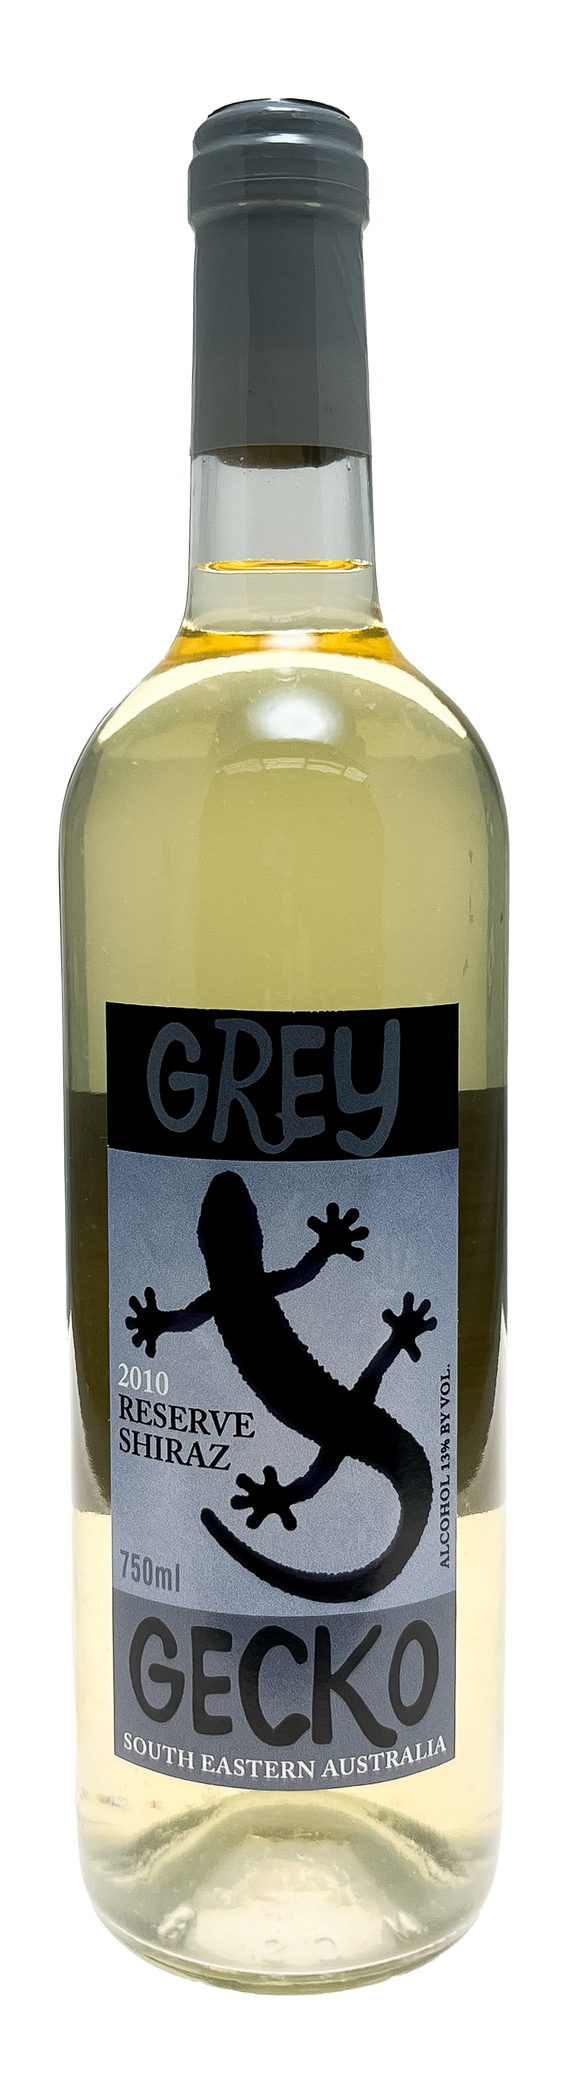 Grey Gecko